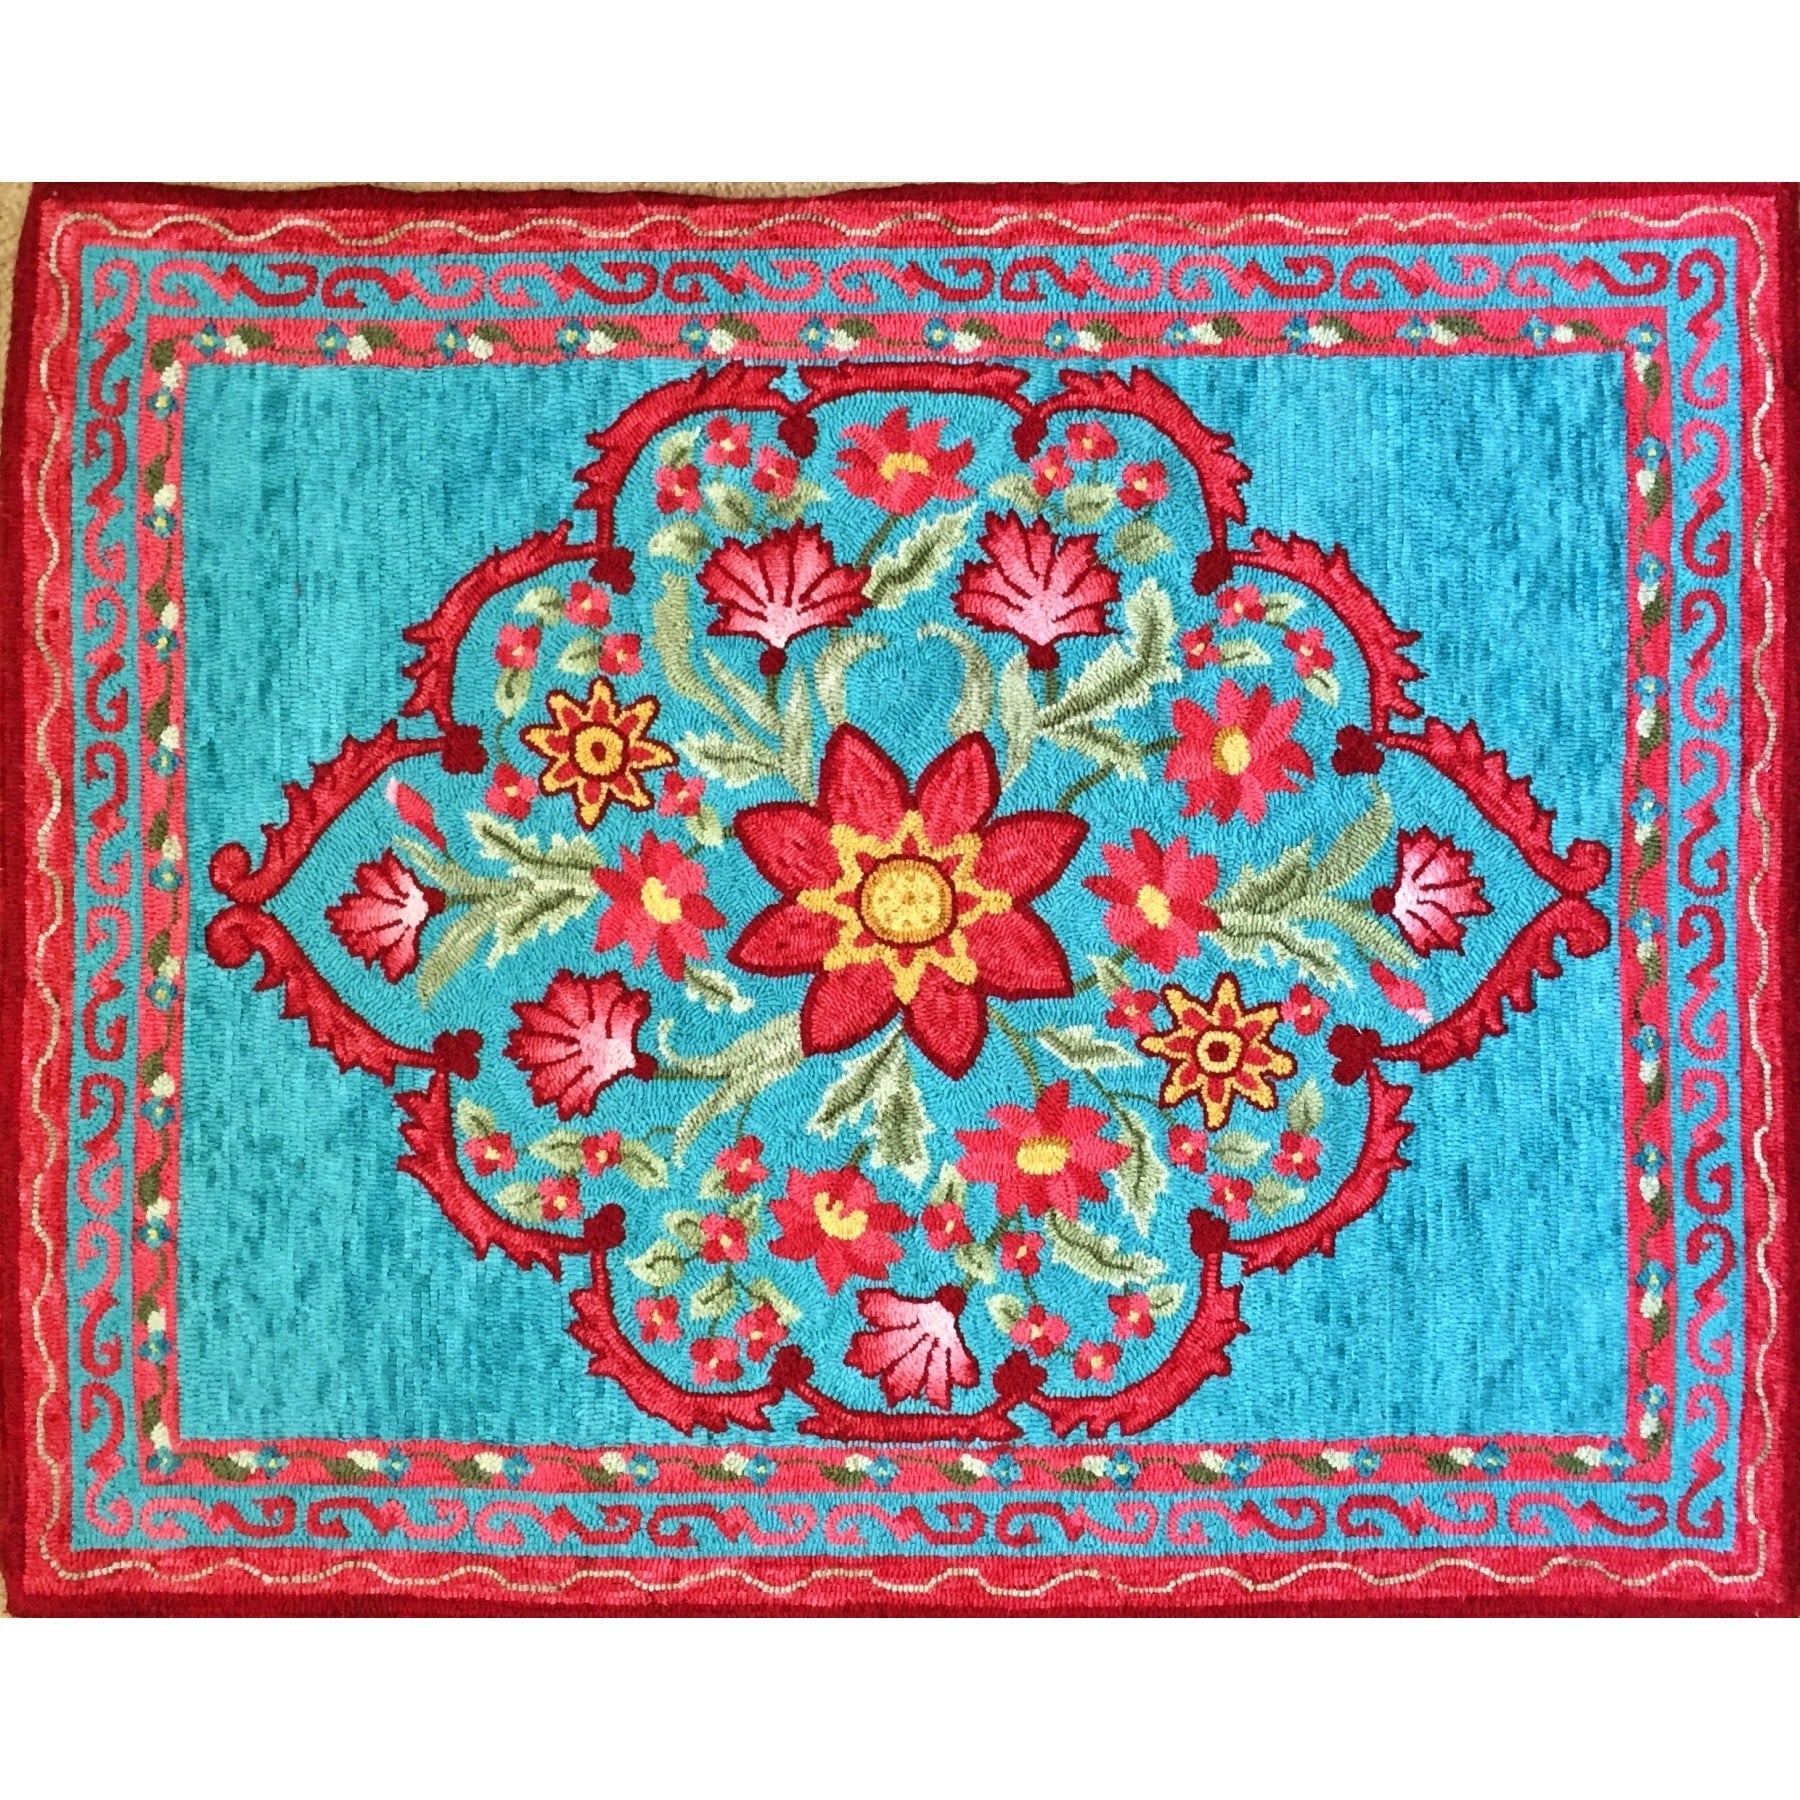 Shalimar Medallion, rug hooked by Margaret Bedle